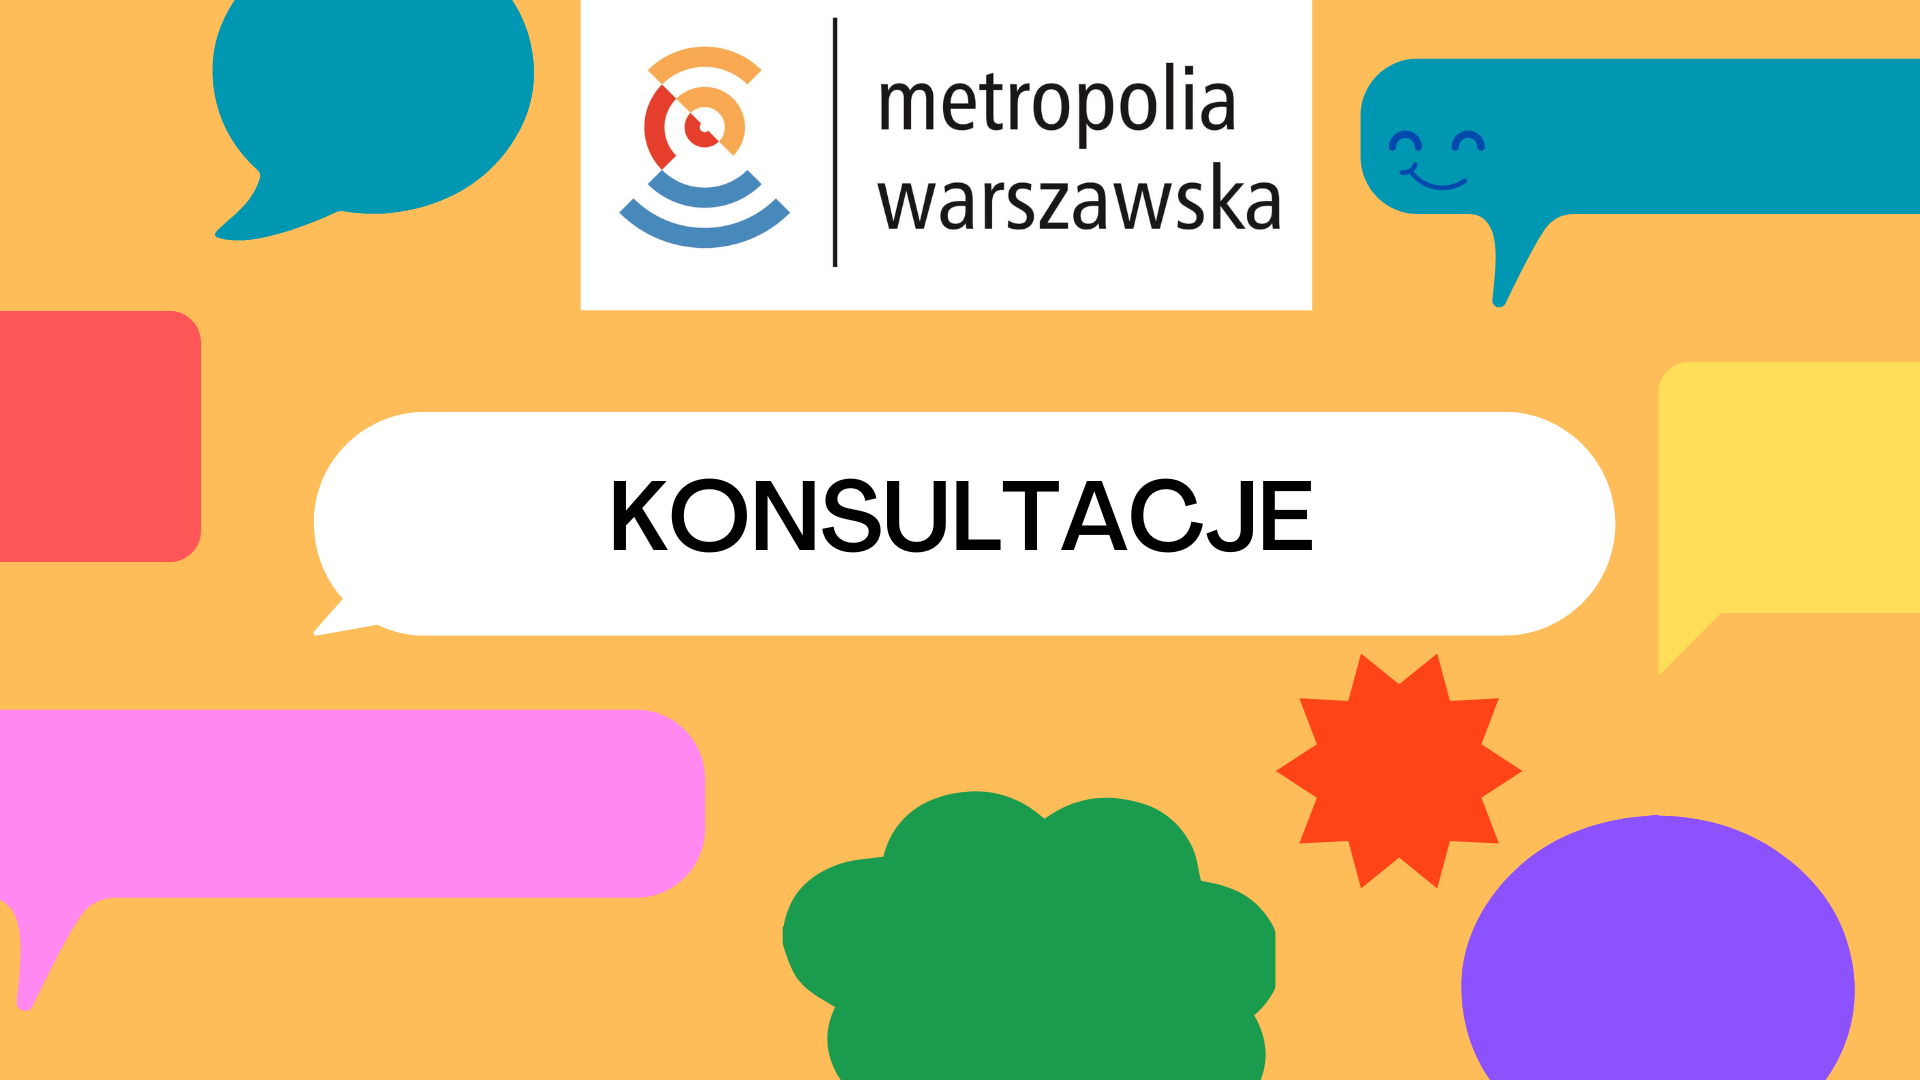 Konsultujemy zaktualizowaną „Strategię ZIT dla metropolii warszawskiej 2021-2027+”